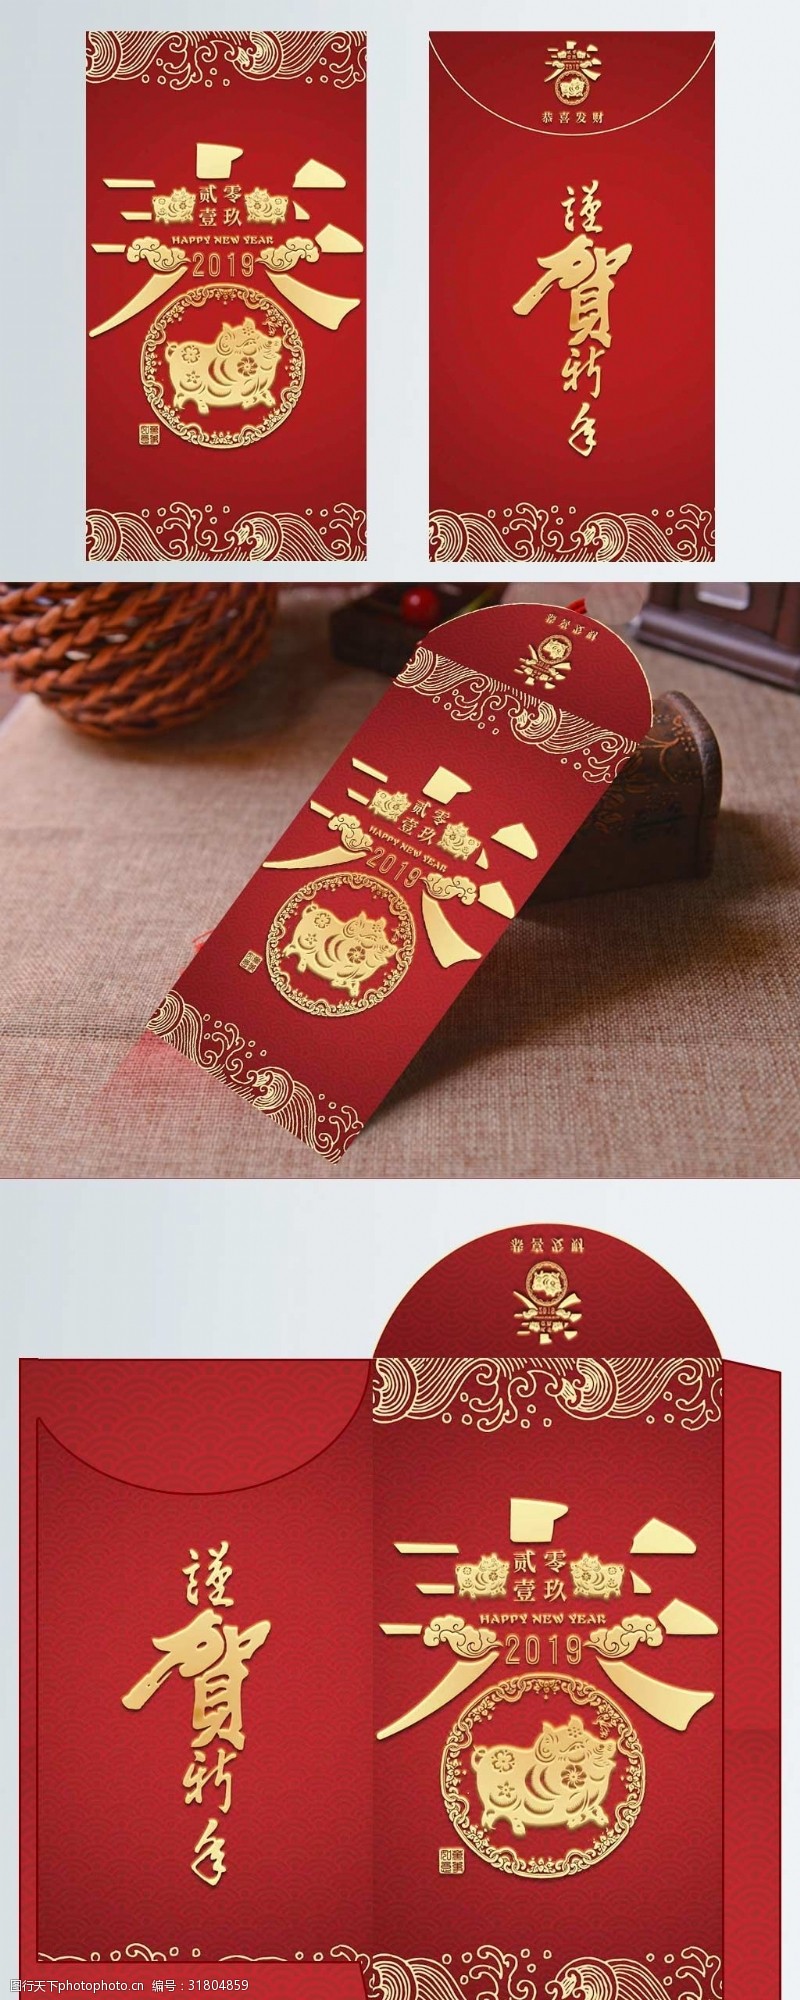 剪纸风原创中国风红色创意剪纸猪年快乐红包psd